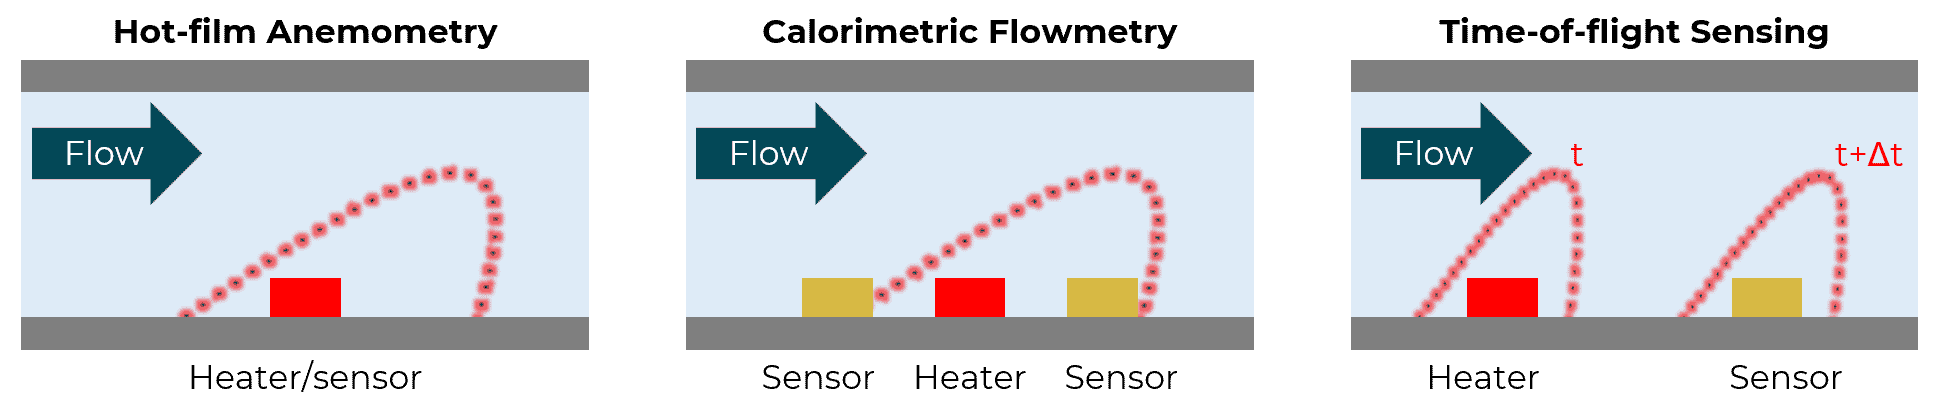 thermal sensors for microfluidic flow sensing